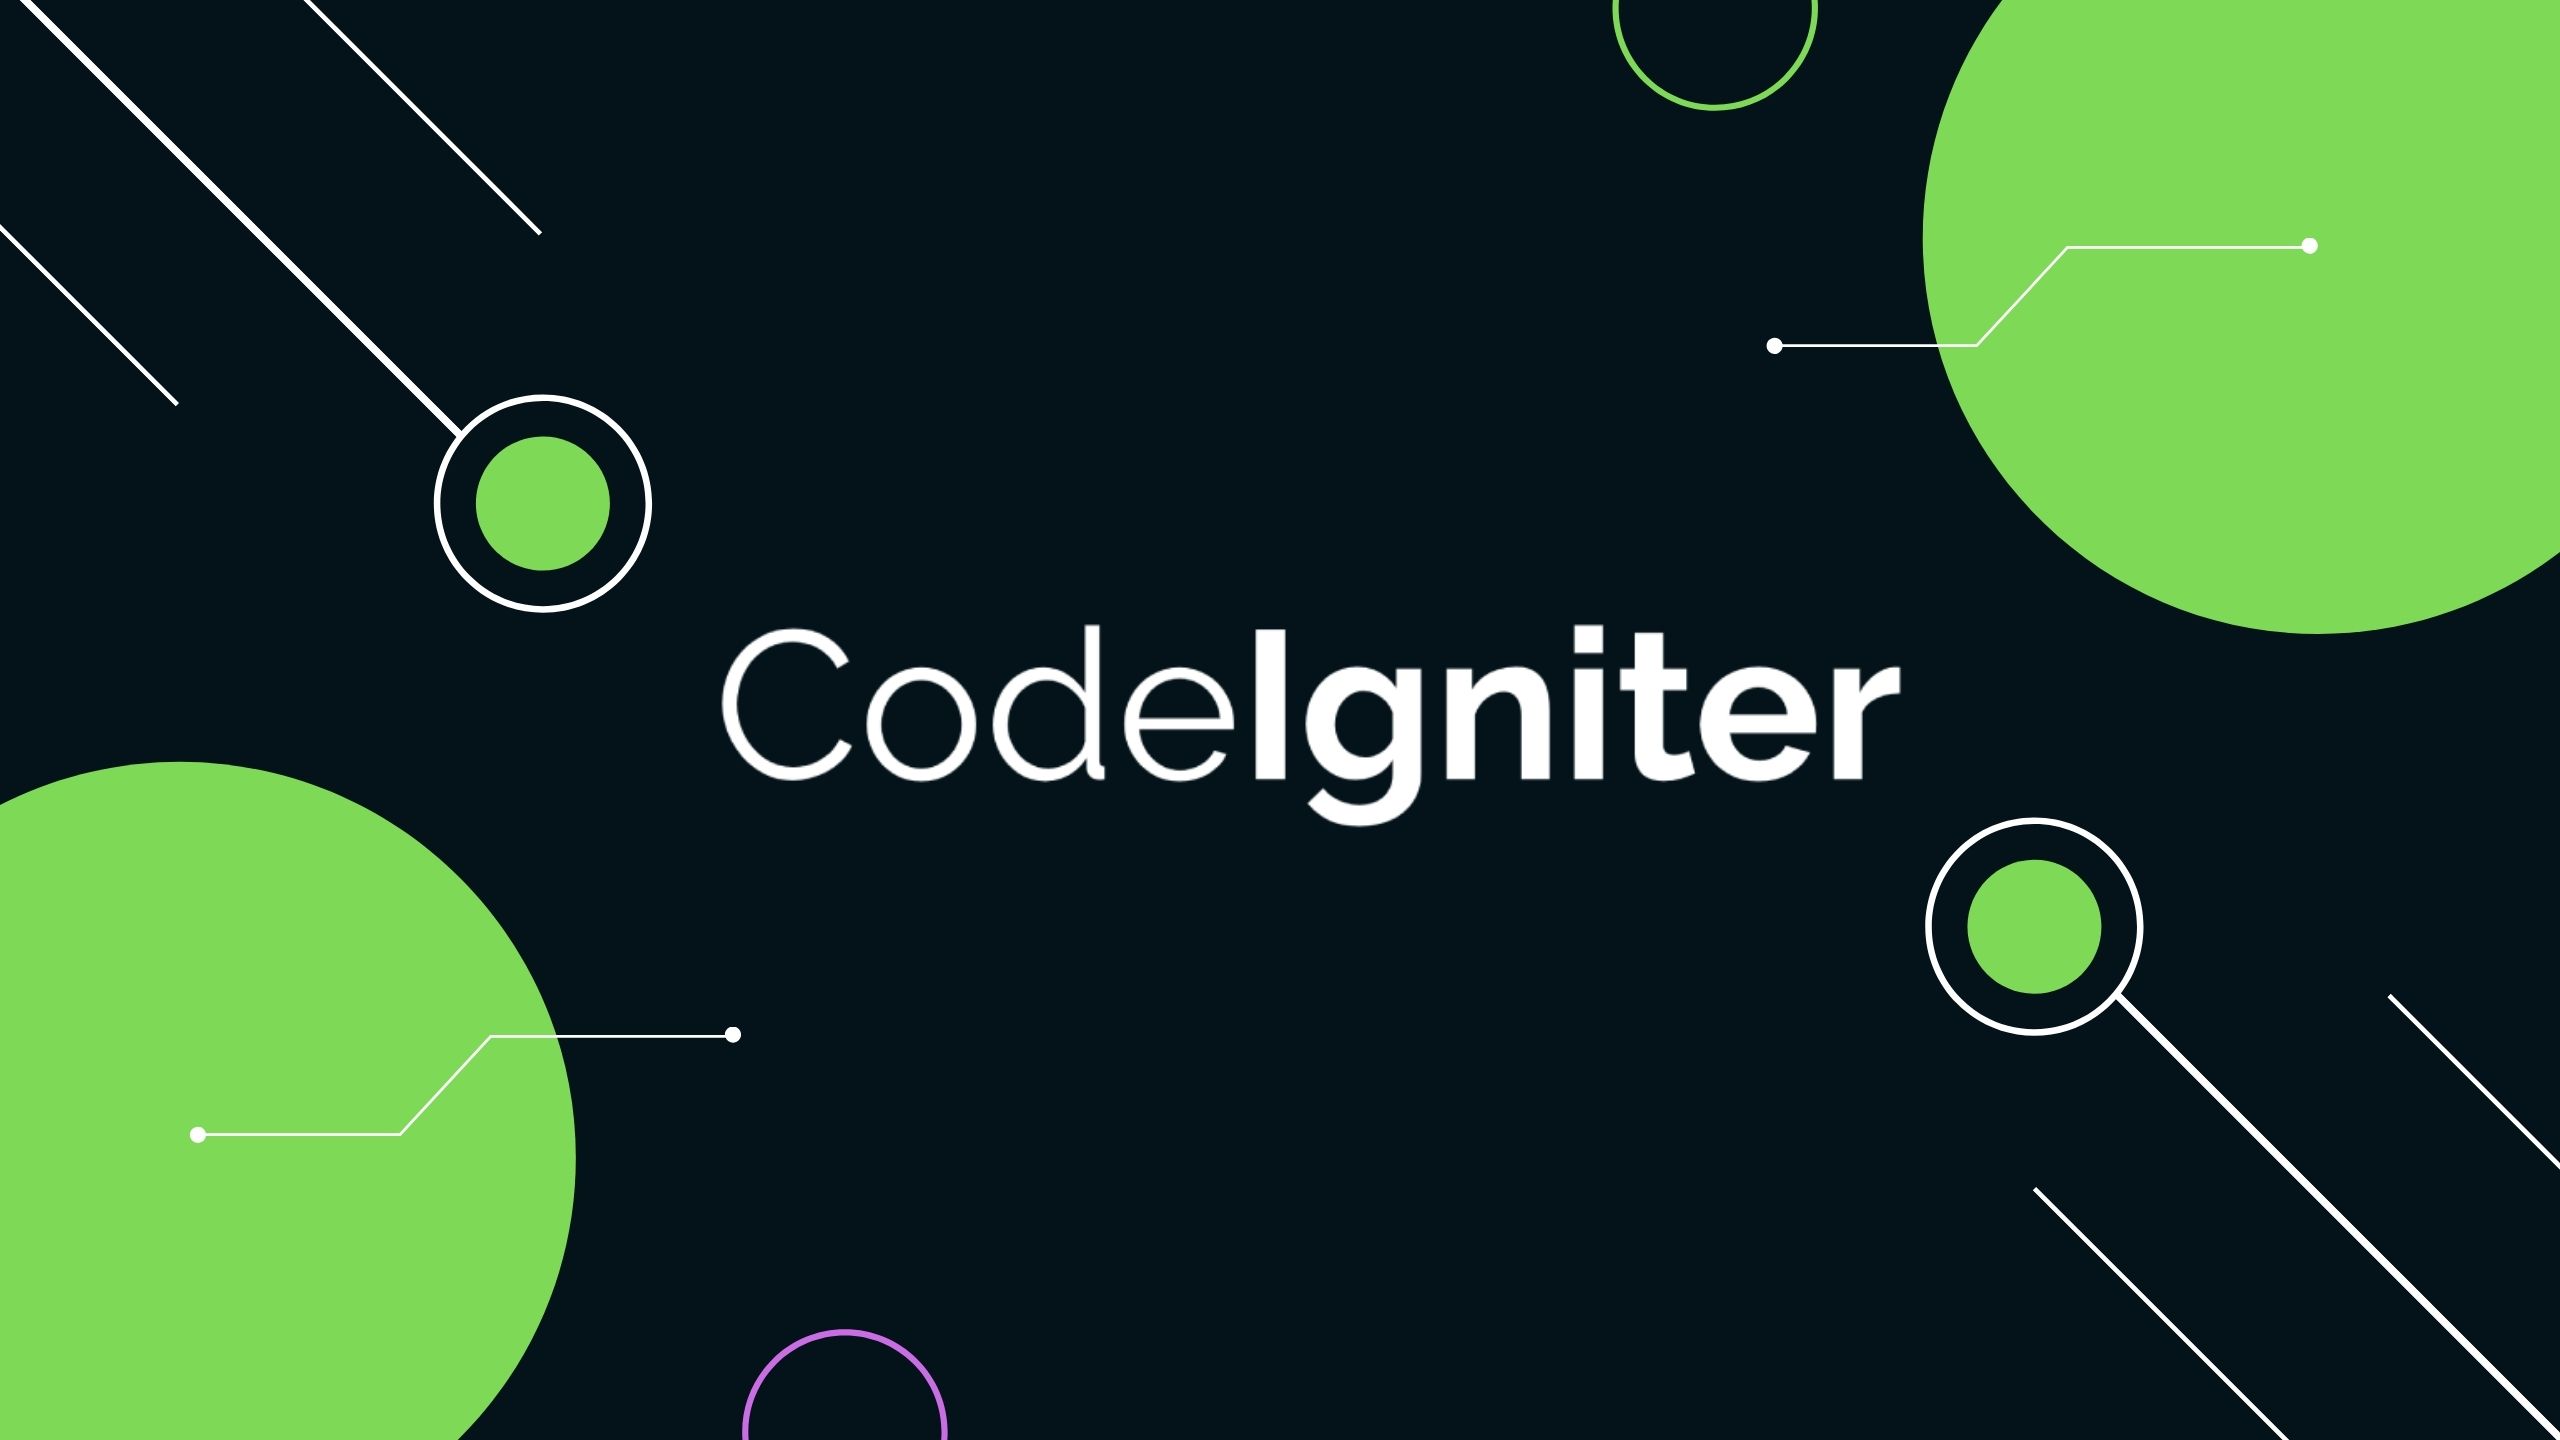 Codeigniter 4 PHP programlama diline ait ücretsiz bir framework'dür. Açık kaynak kodlu ve ücretsiz olasından dolayı PHP geliştiricileri tarafından sık kullanılır. MVC (Model - View - Controller) yapısı ile kod düzeni ve okunabilirliği üst düzeyde tutar.